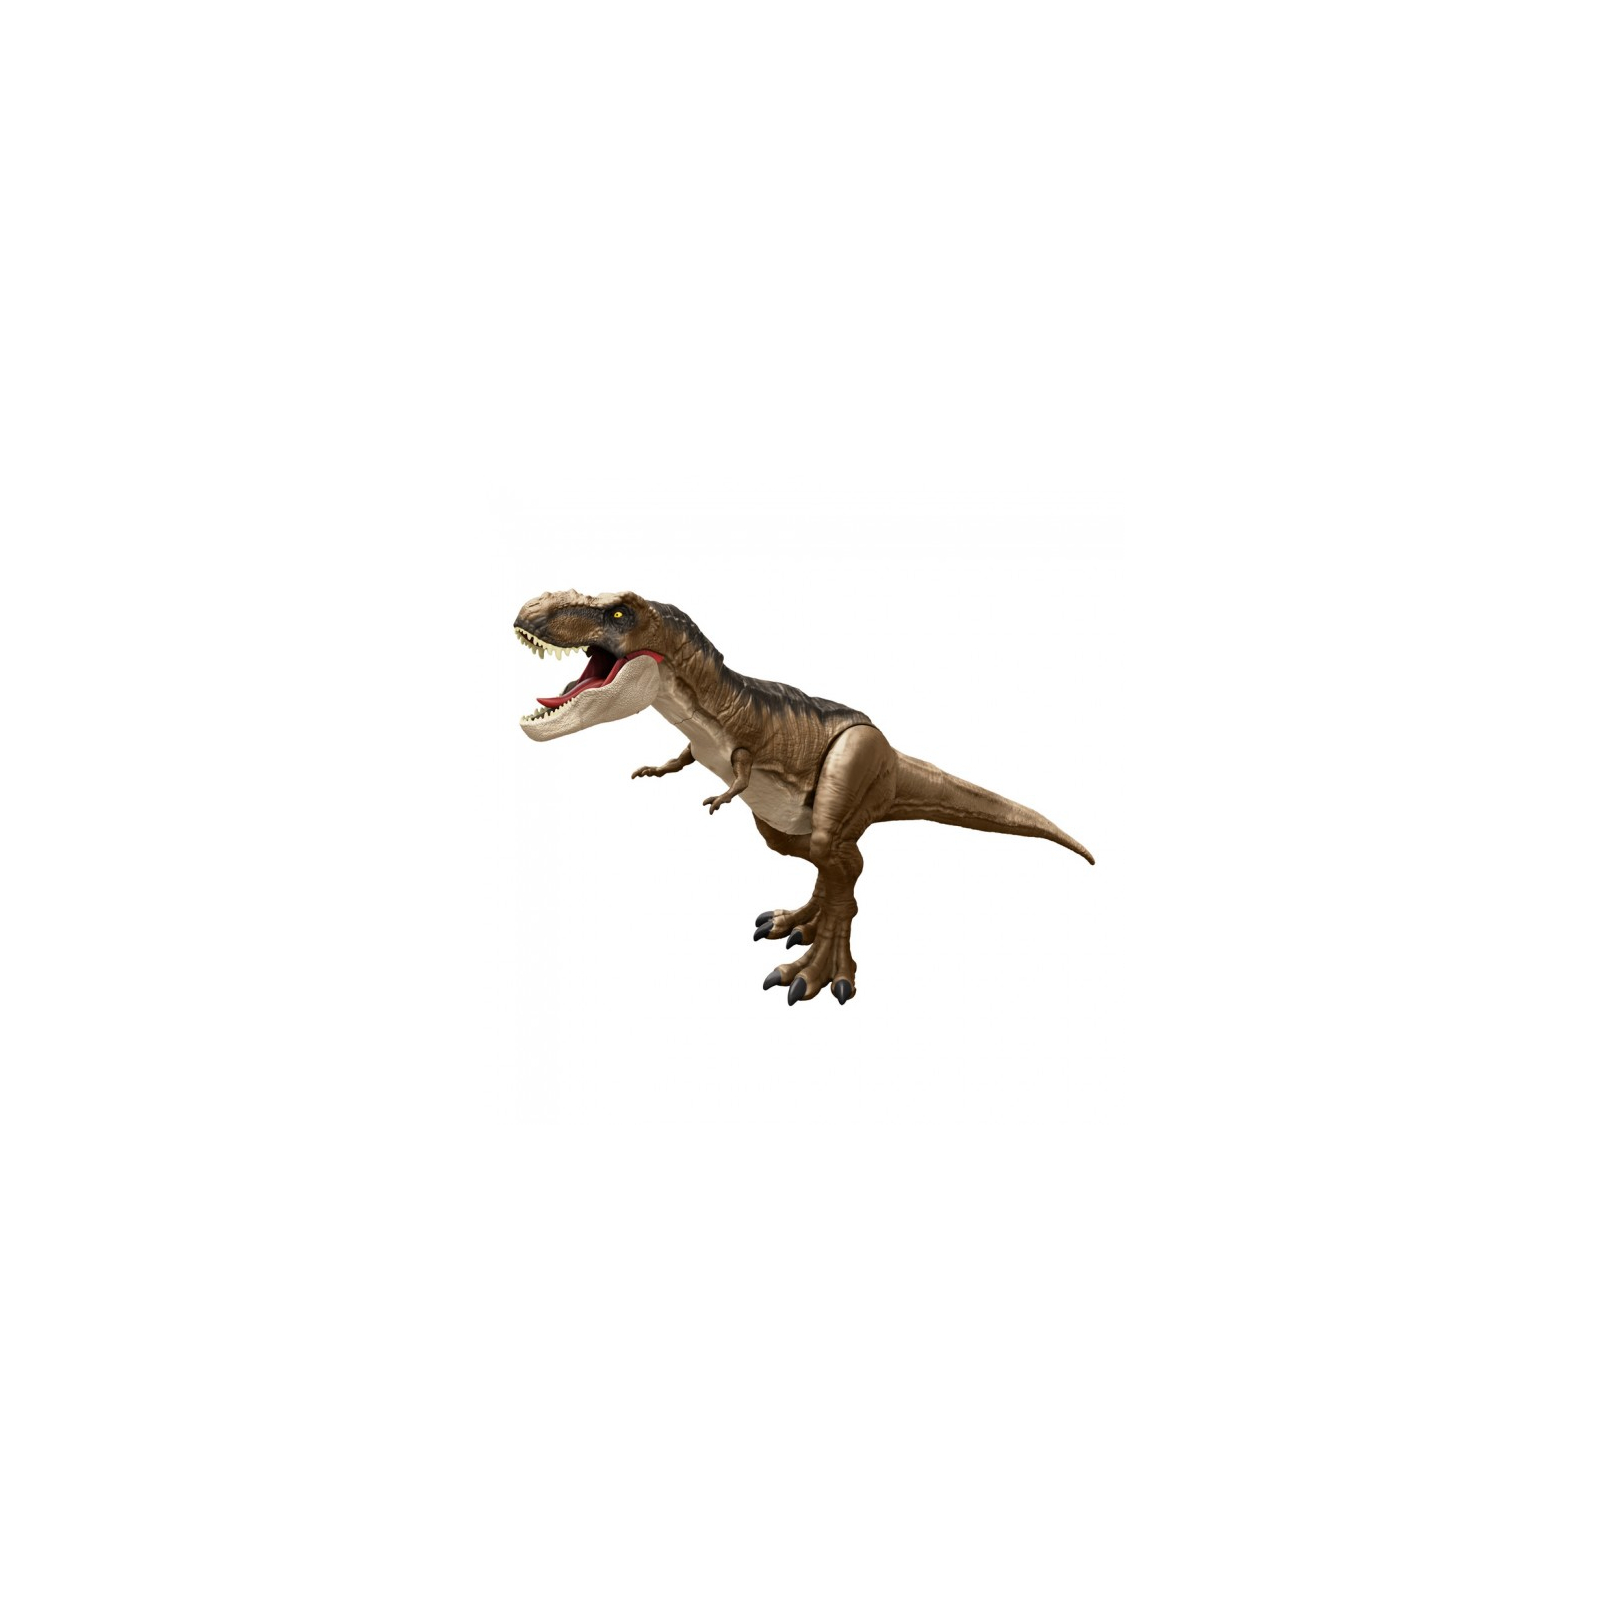 Фигурка Jurassic World Невероятно большой Ти-рекс (HBK73)